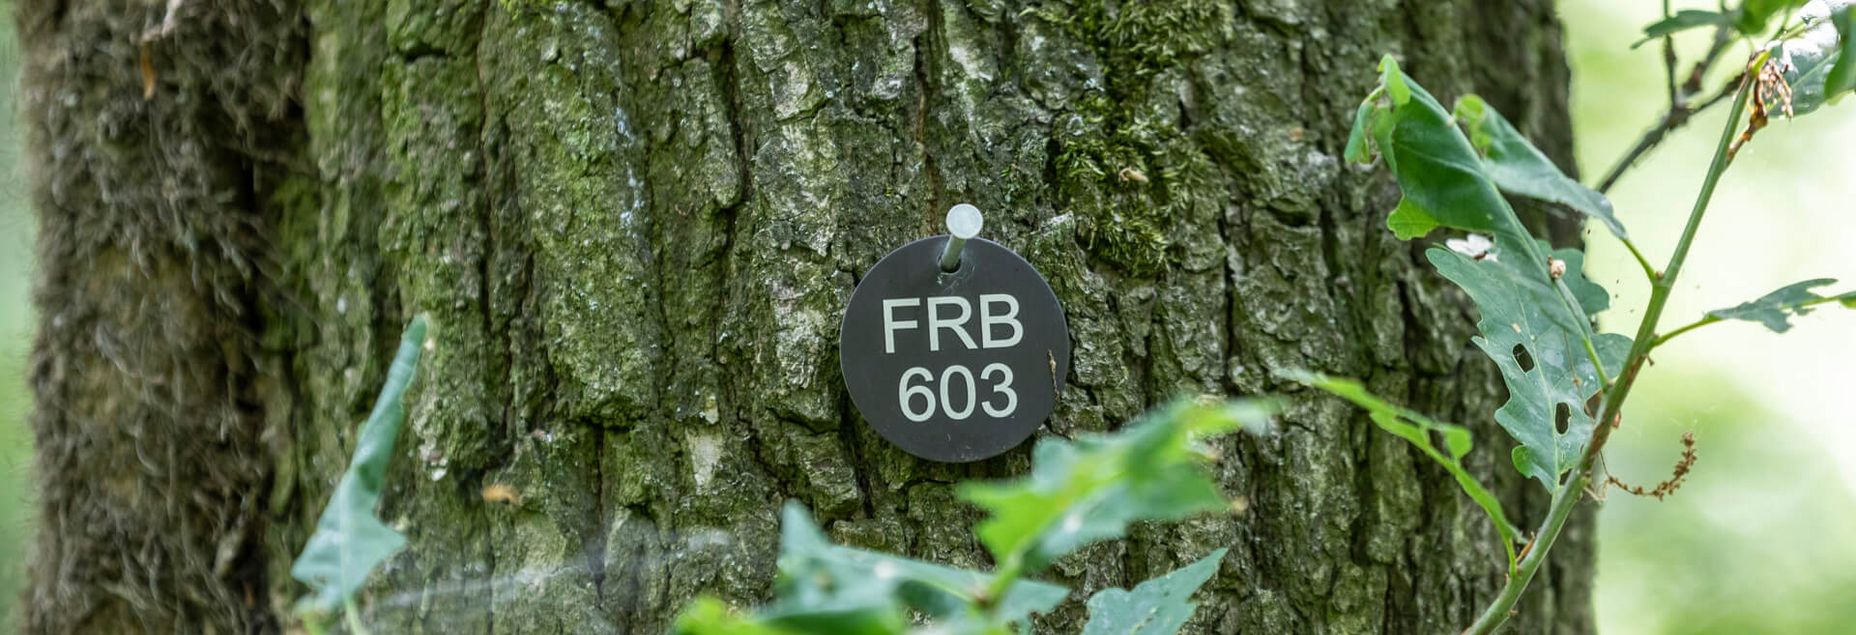 FRB 603 - Plakette